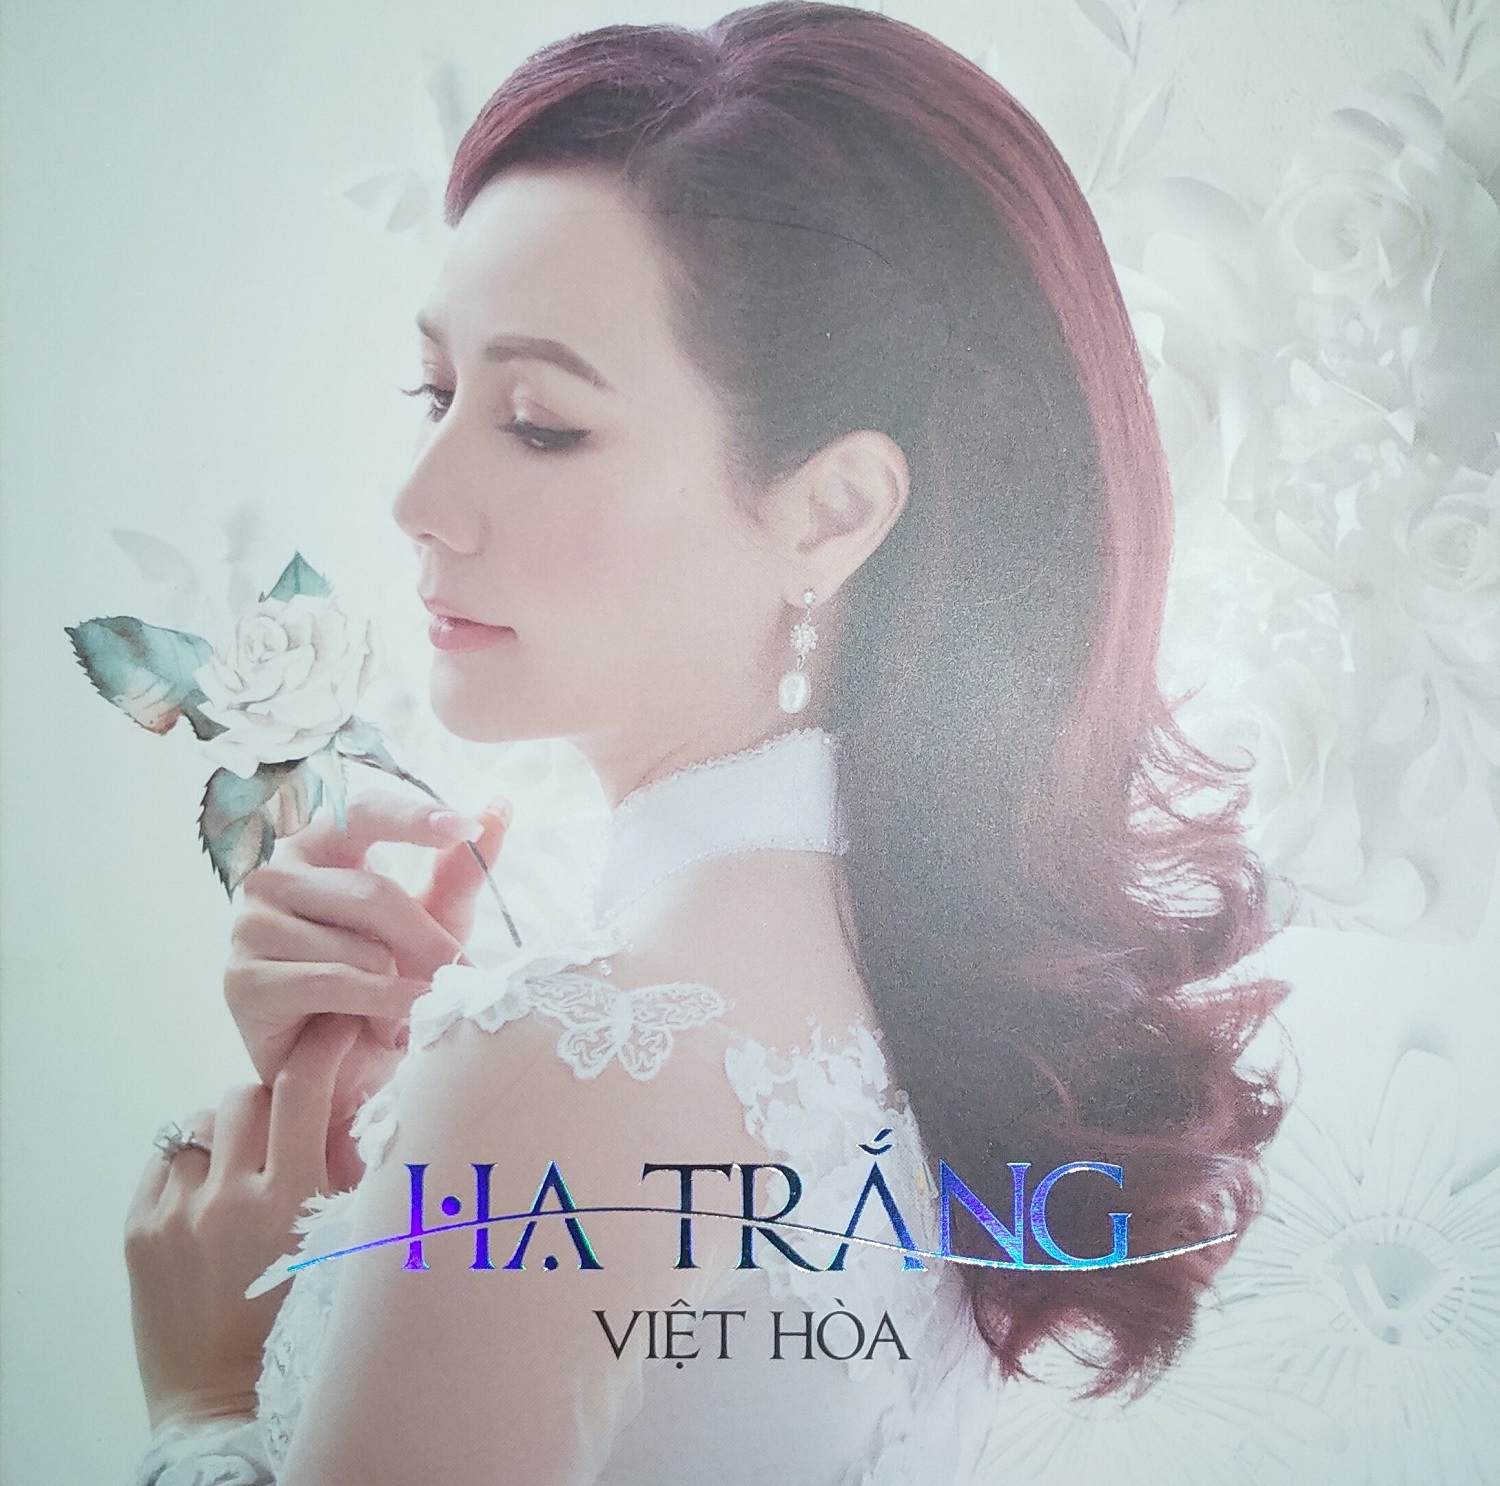 Việt Hòa - Hạ Trắng (2020) [WAV]